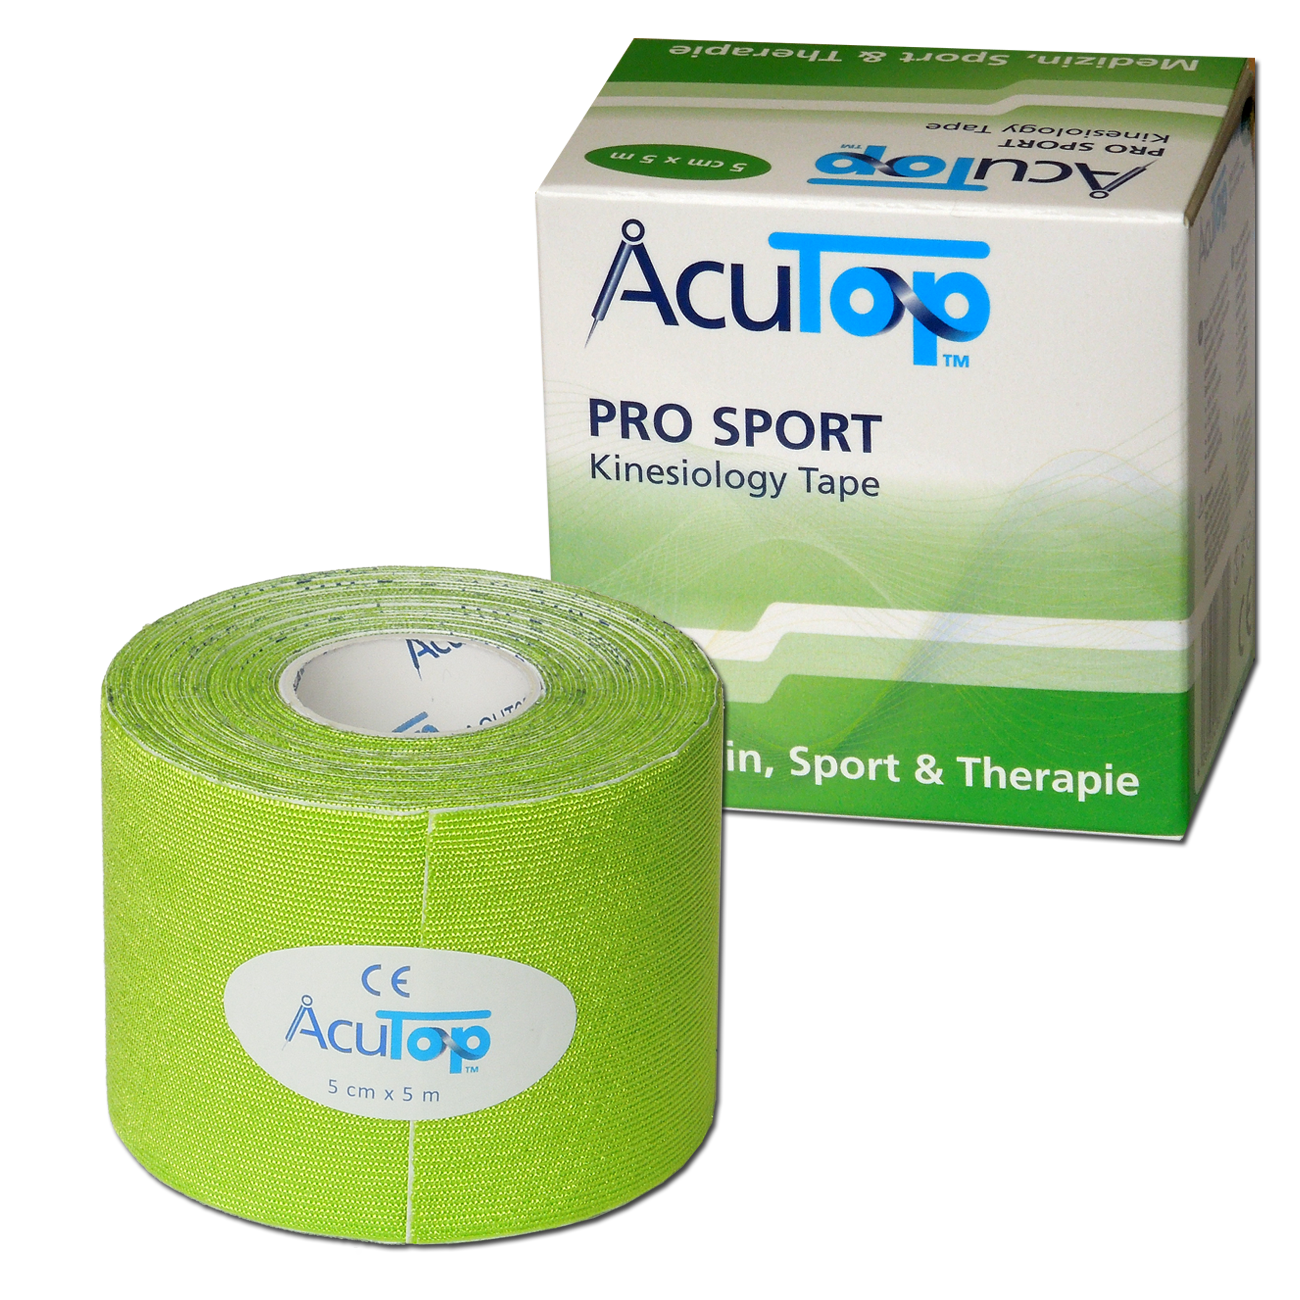 AcuTop Pro Sport - De beste sporttape - Groen - 5cm x 5m - Intertaping.nl